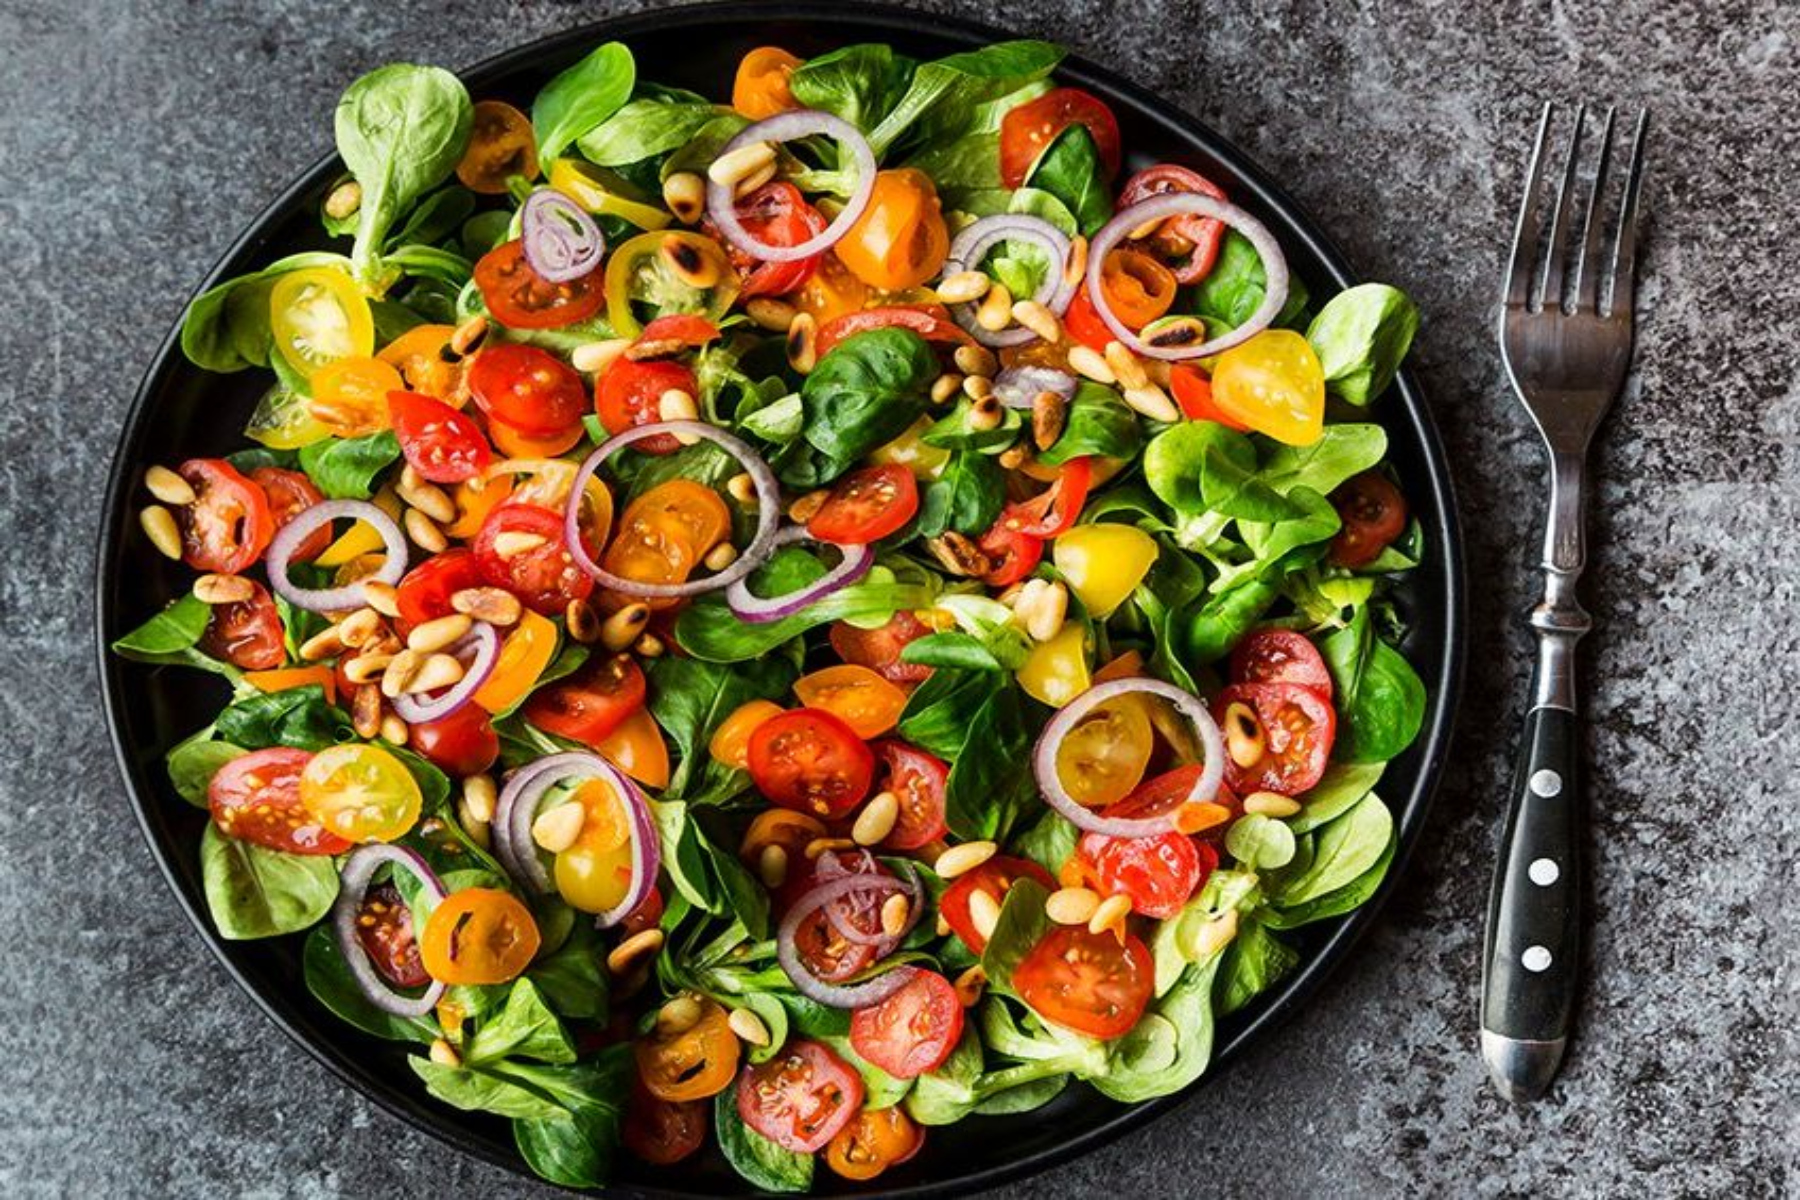 Σαλάτα καθημερινότητα: Τα οφέλη στον οργανισμό όταν τρώμε καθημερινά σαλάτα